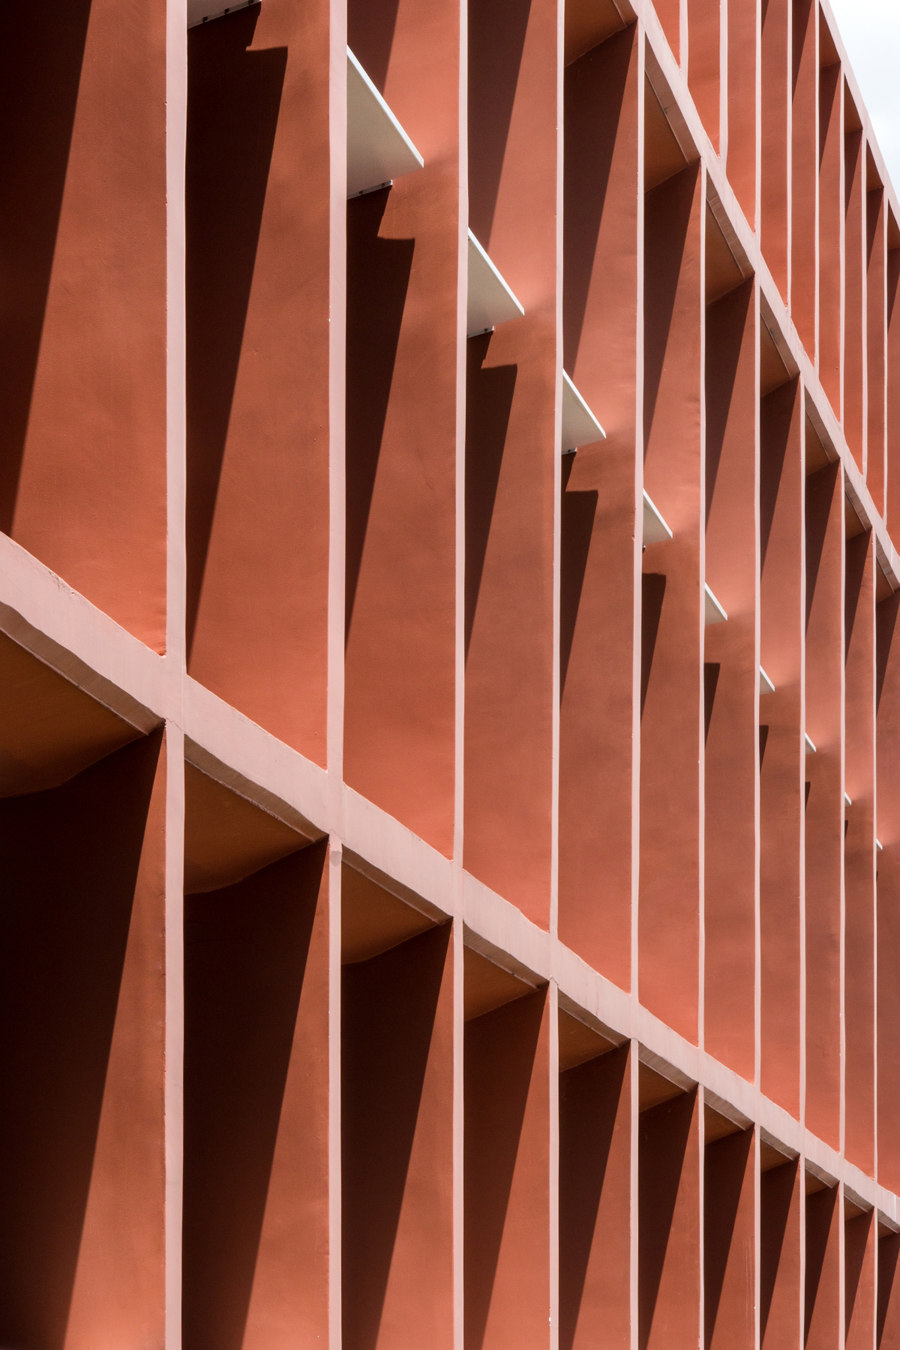 Neeson Cripps Academy von COOKFOX Architects | Schulen